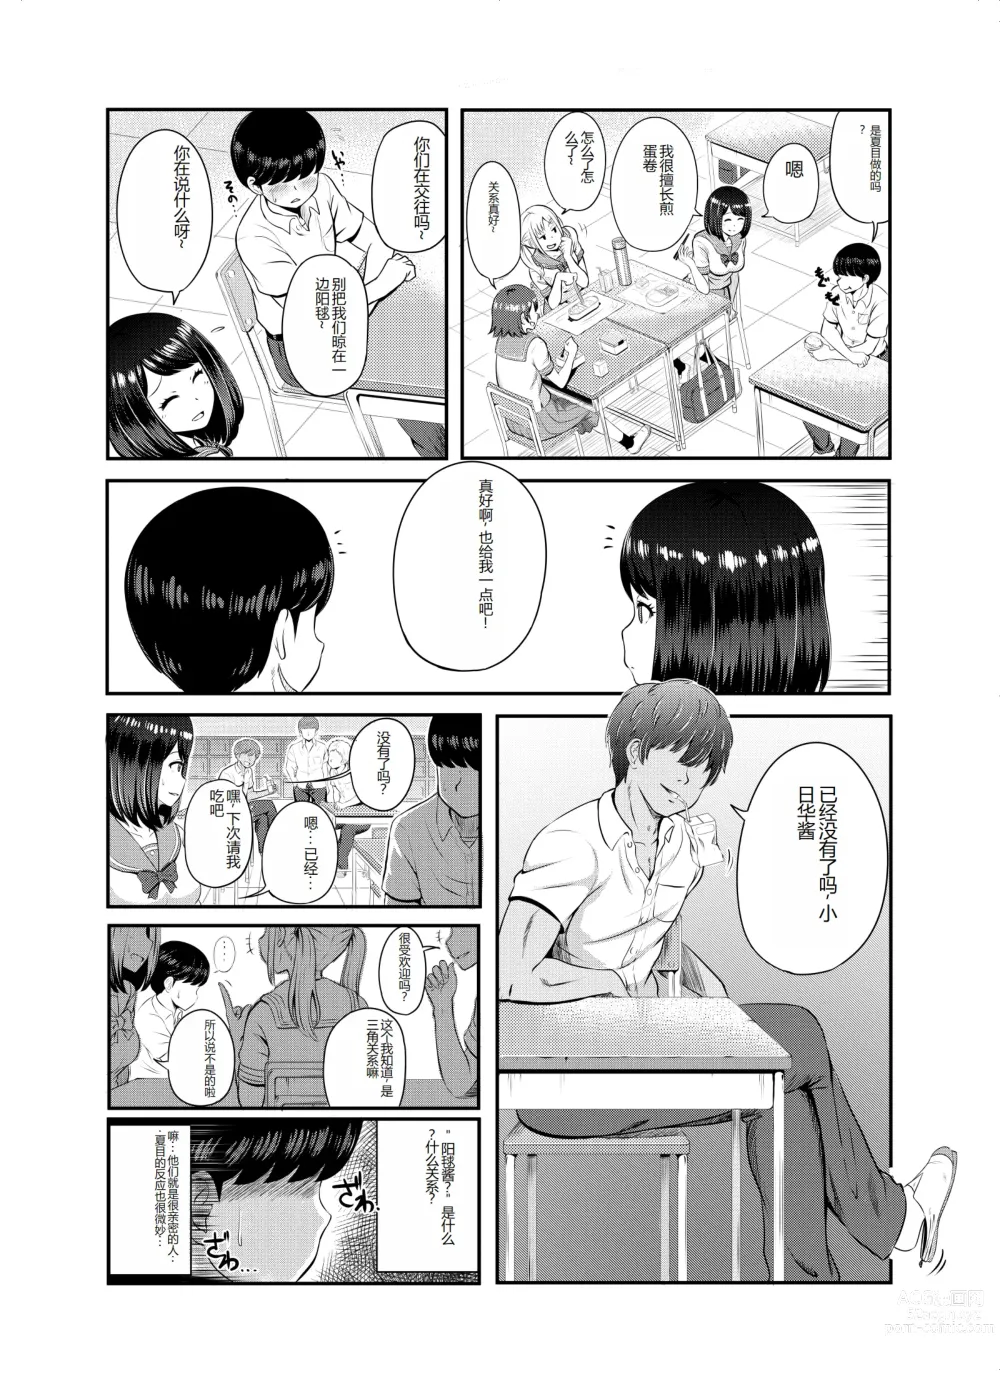 Page 9 of doujinshi 2-nen 3-kumi